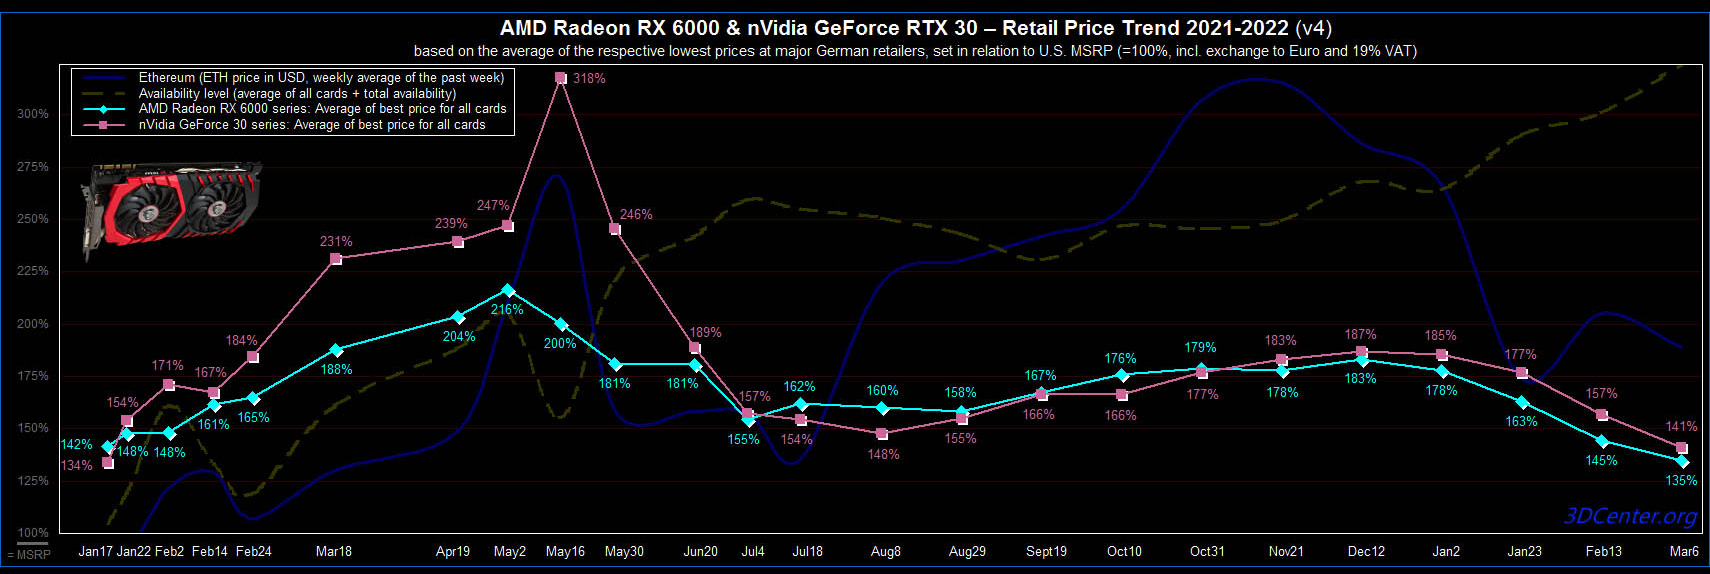 Впервые за многие месяцы ценник RTX 3090 просел ниже 2000 евро, а NVIDIA готовится снизить цены на 8-12%